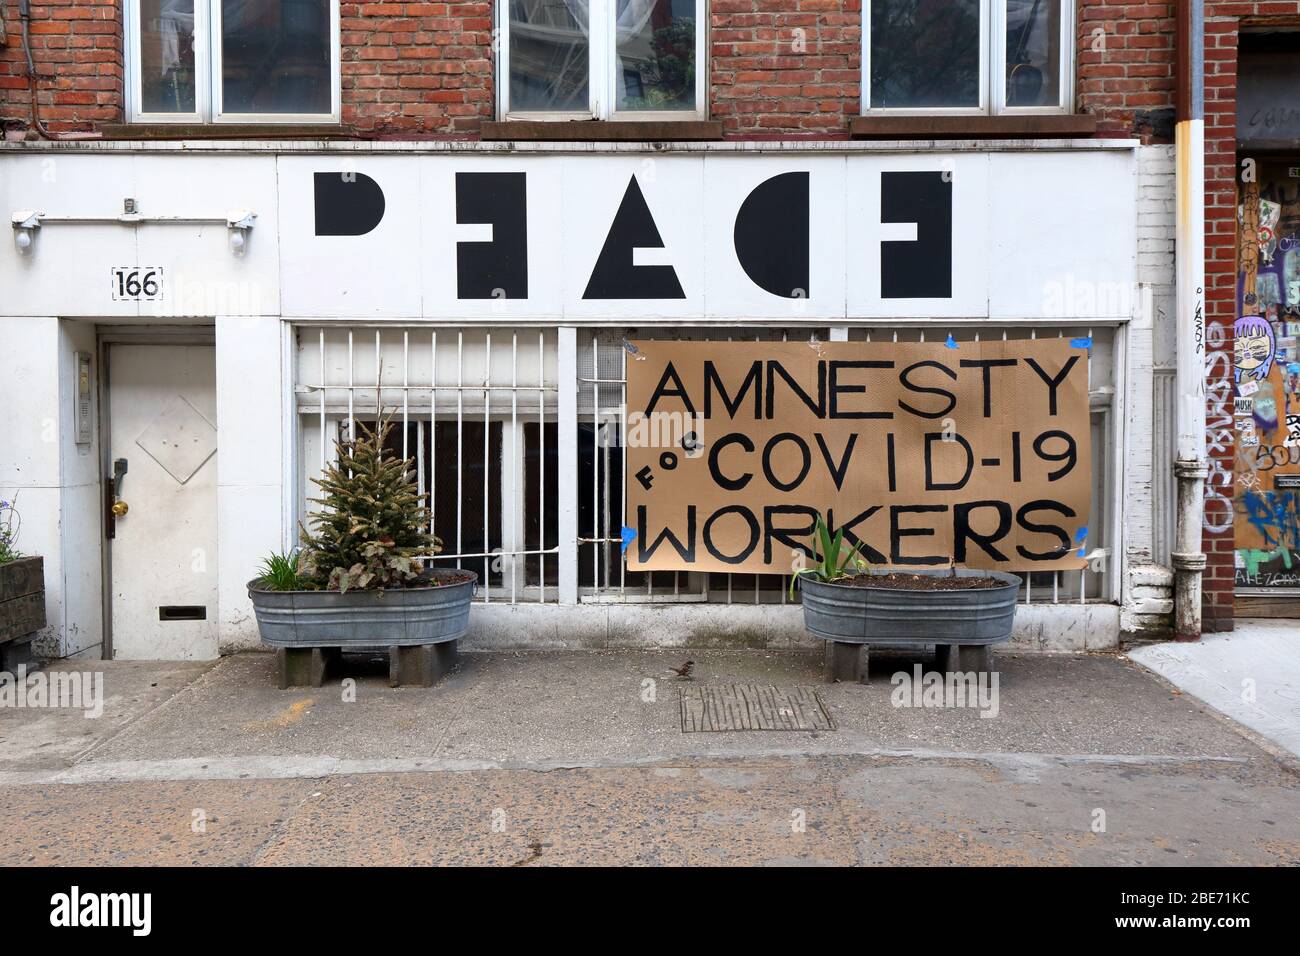 Un cartel delante de la casa del artista Anton van Dalen en la aldea este de Nueva York que dice: "Amnistía para los trabajadores de COVID-19" durante el coronavirus. Foto de stock